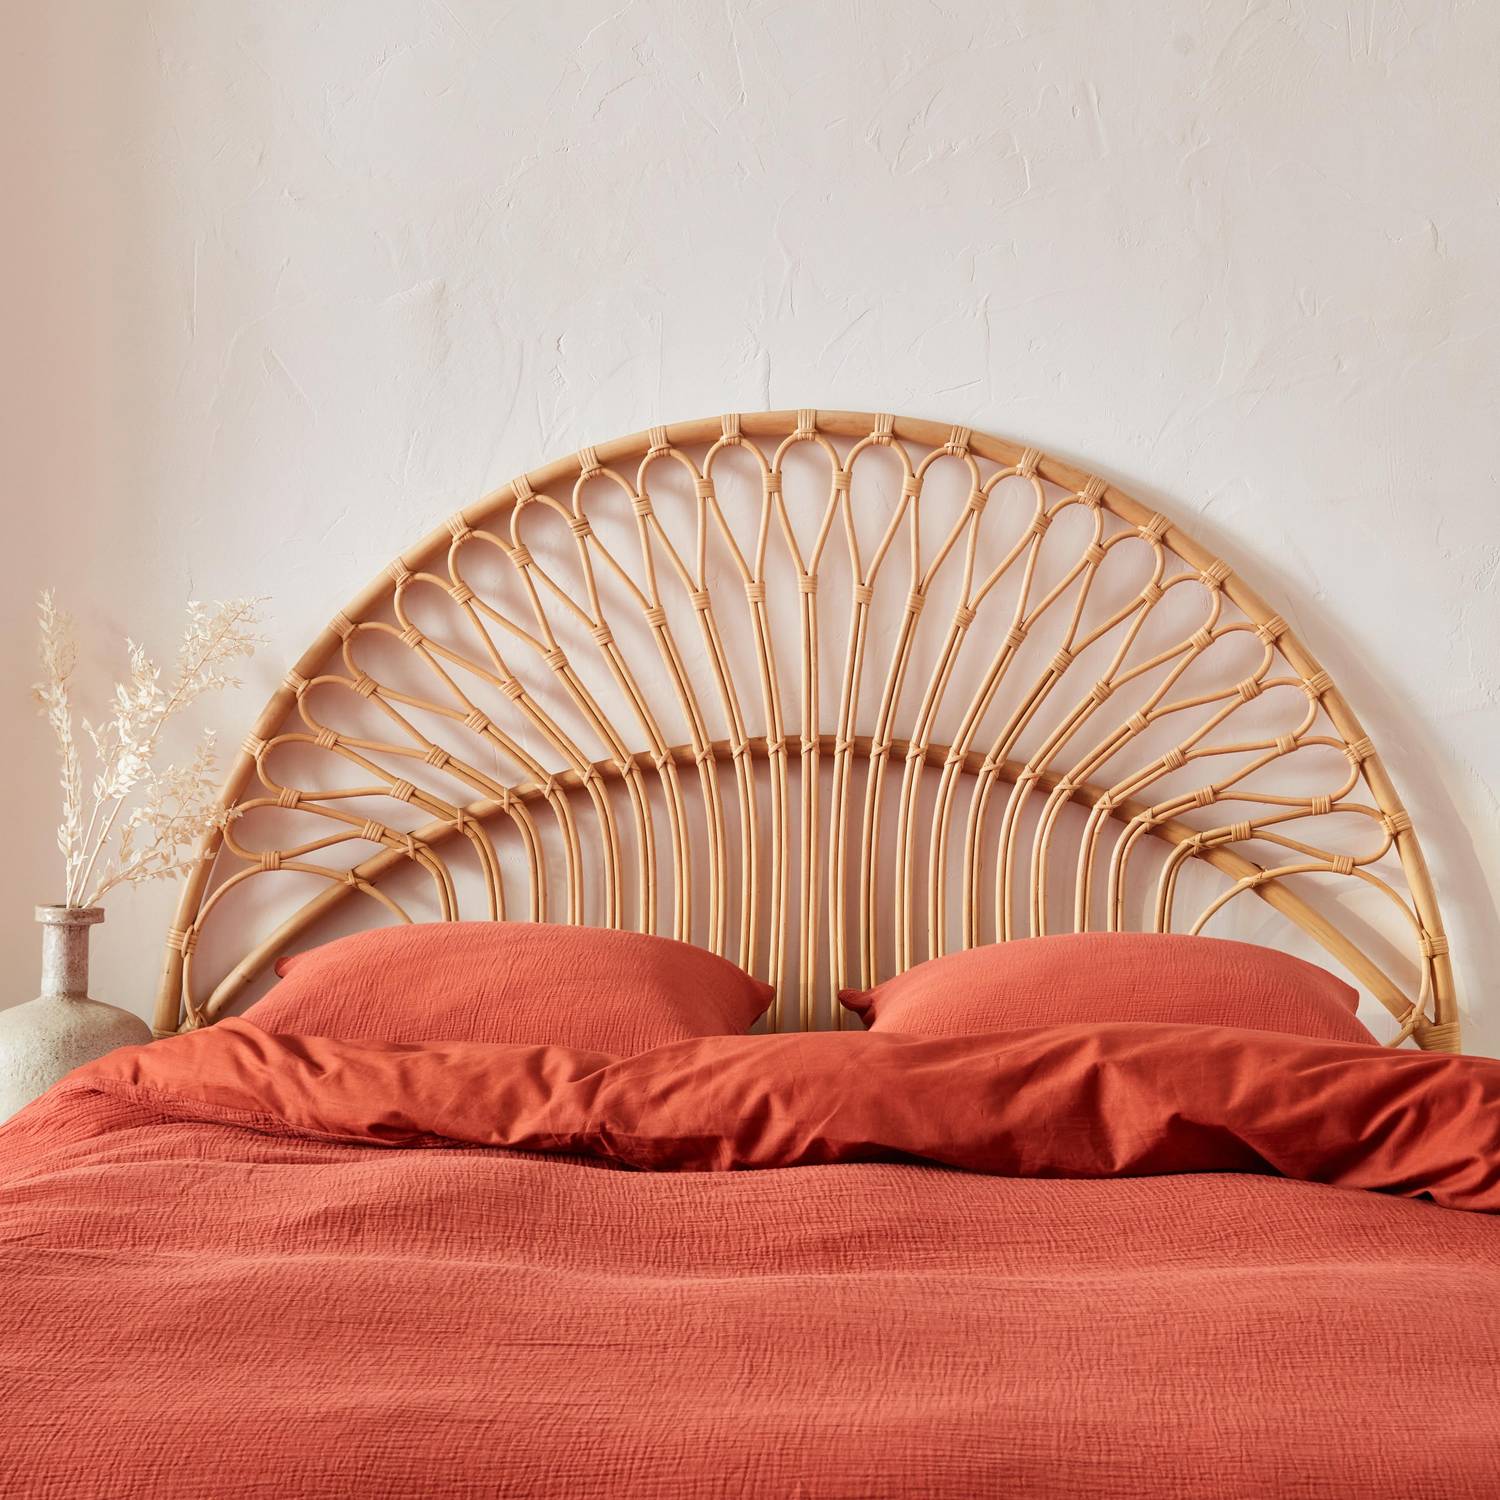 Kopfteil aus Rattan Natur passend für Betten mit einer Breite von 160 cm, B 160 x T 3 x H 130 cm Photo2